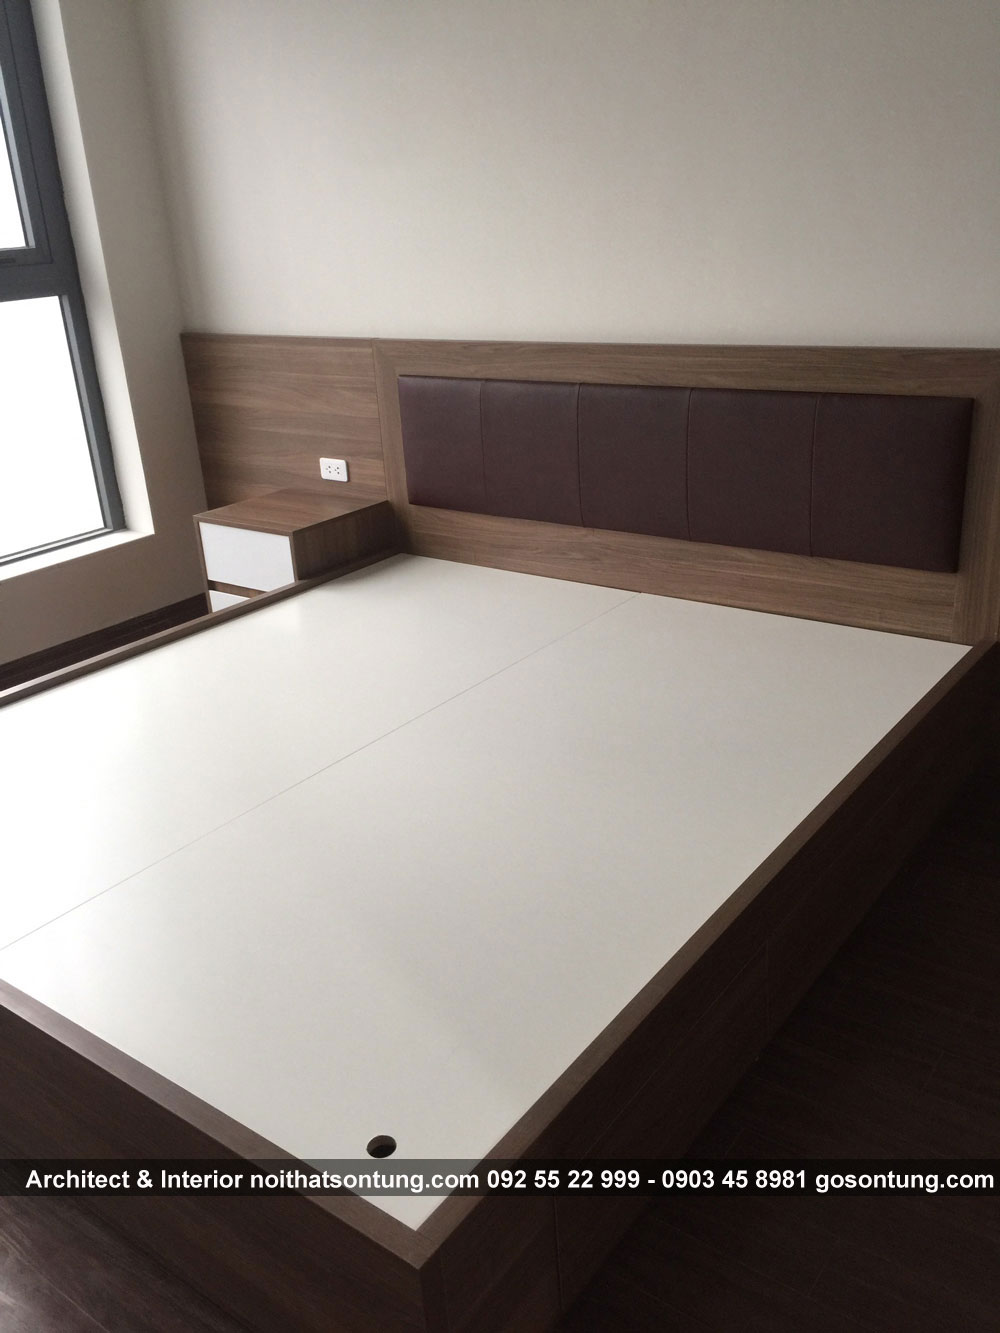 Thiết kế giường ngủ gỗ công nghiệp tại Hà Nội